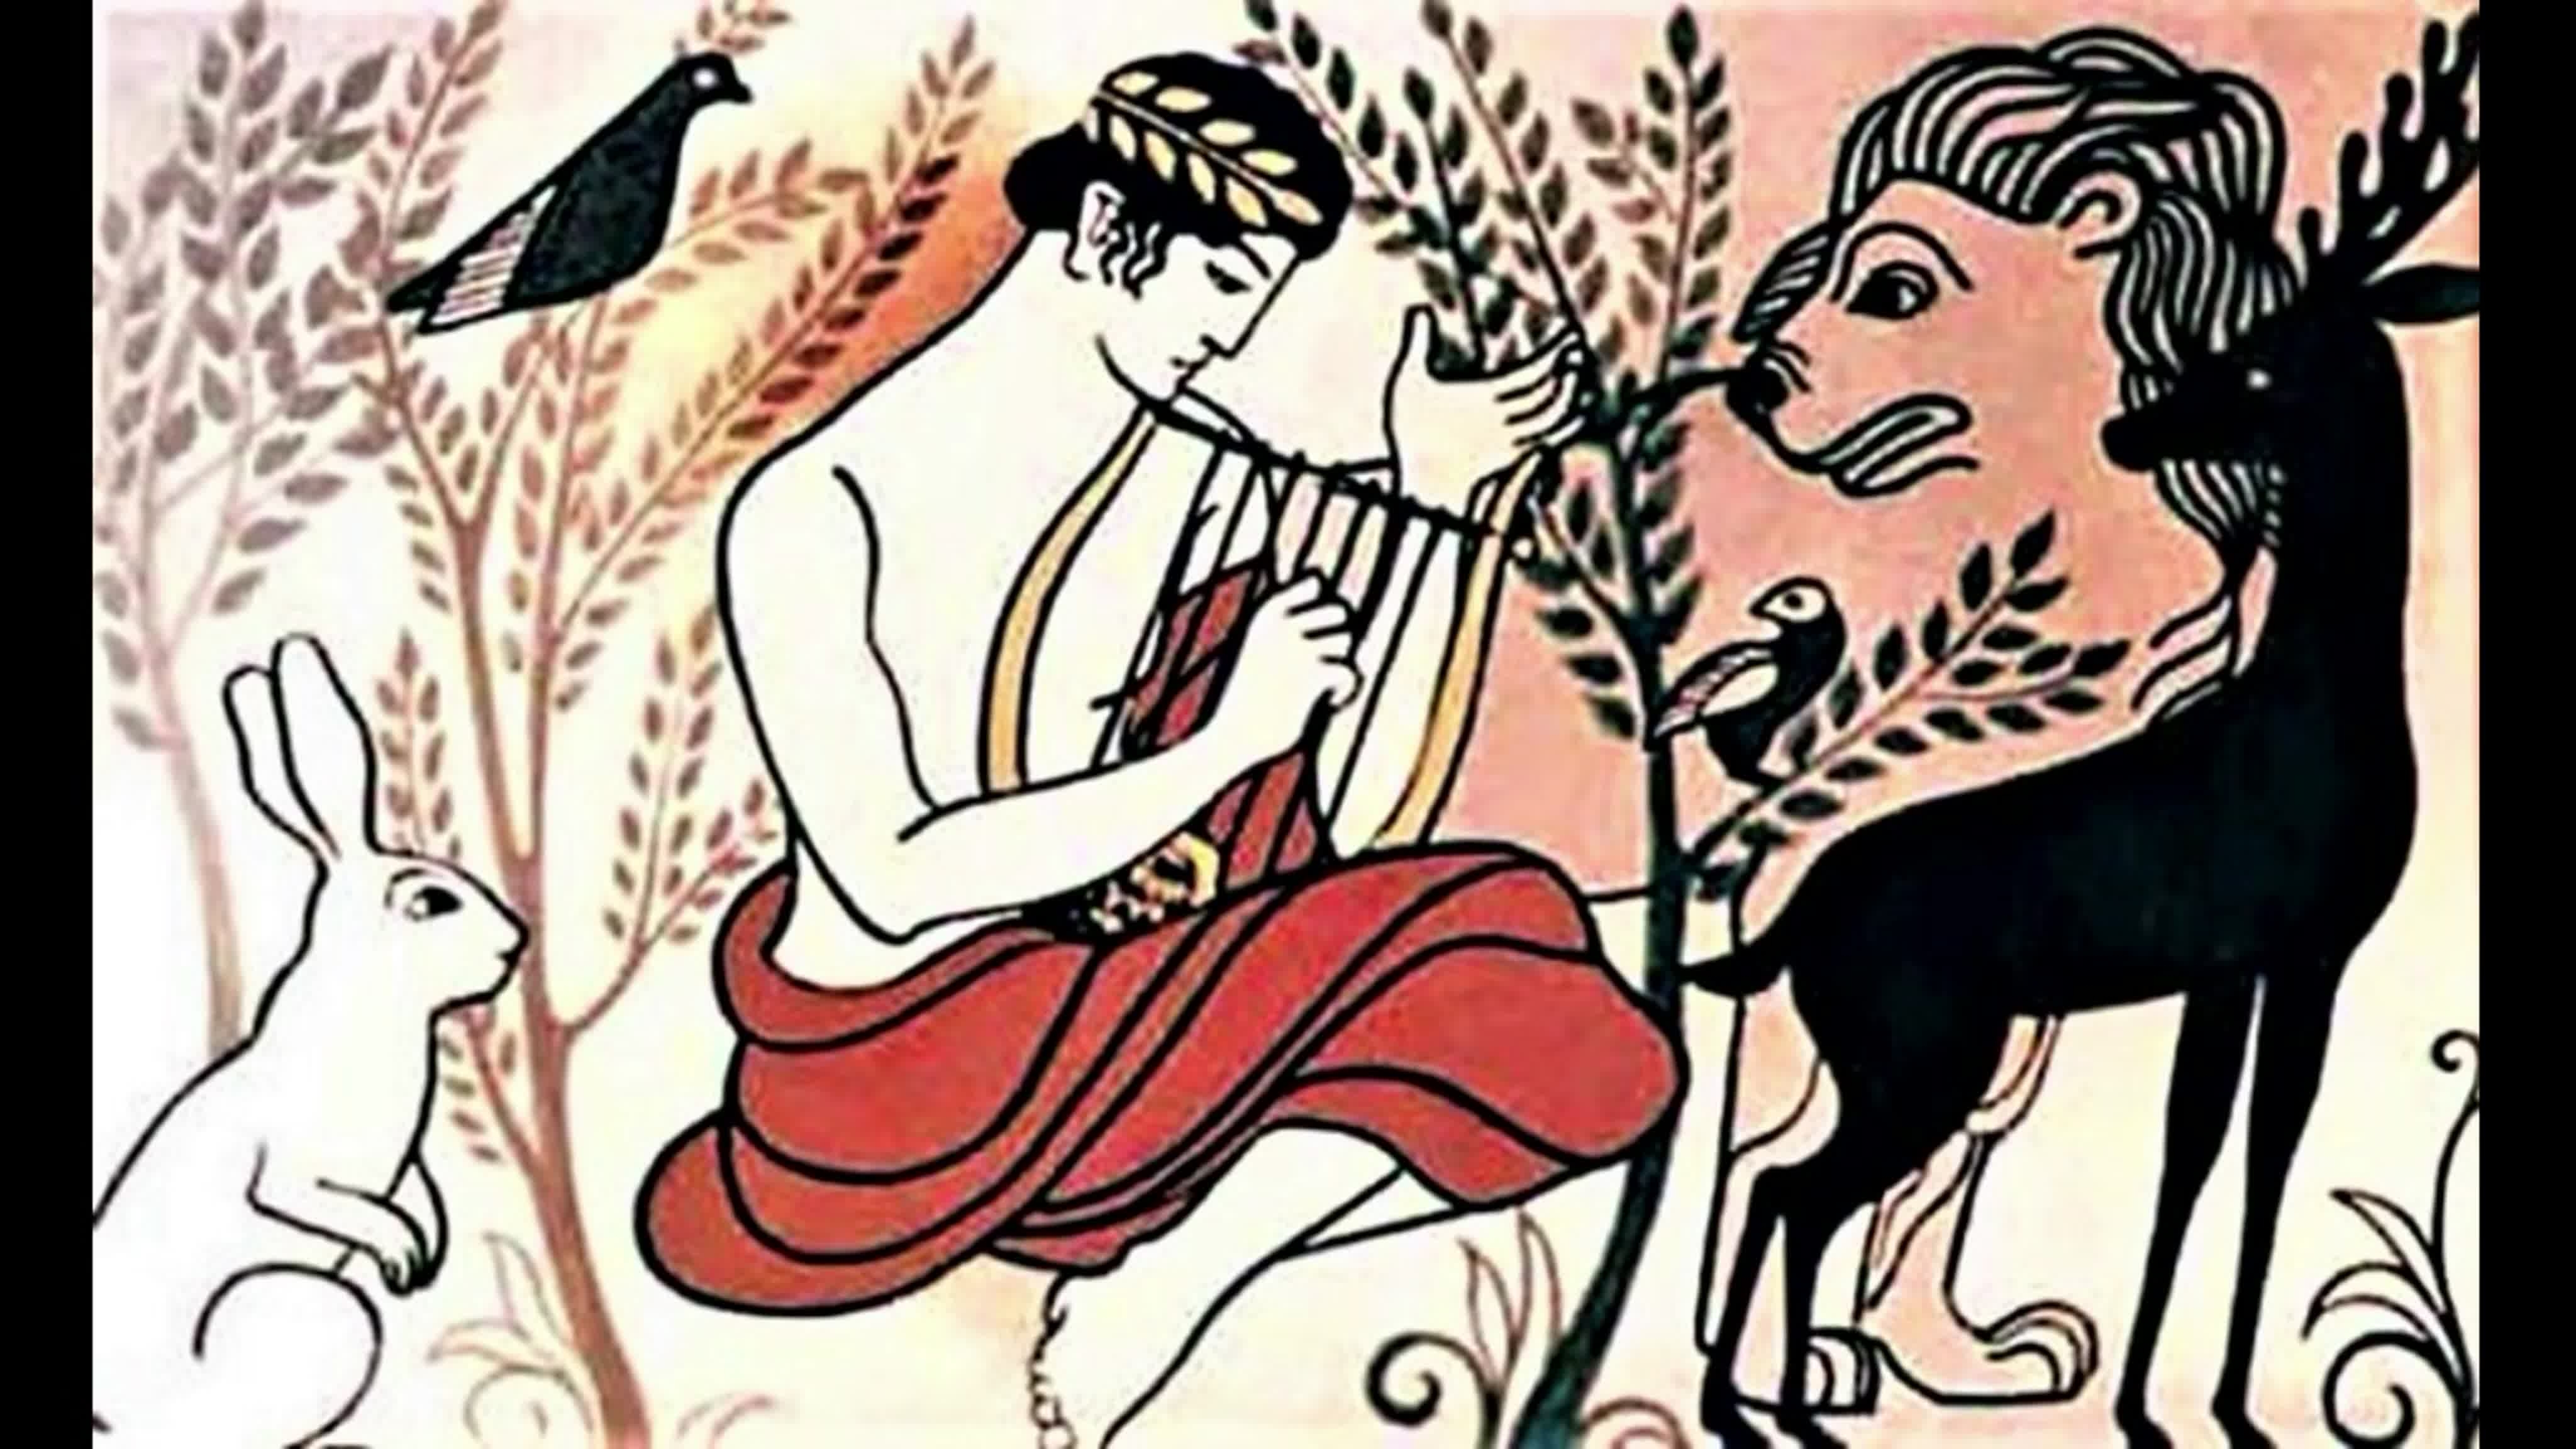 Мифы древней Греции Орфей и Эвридика